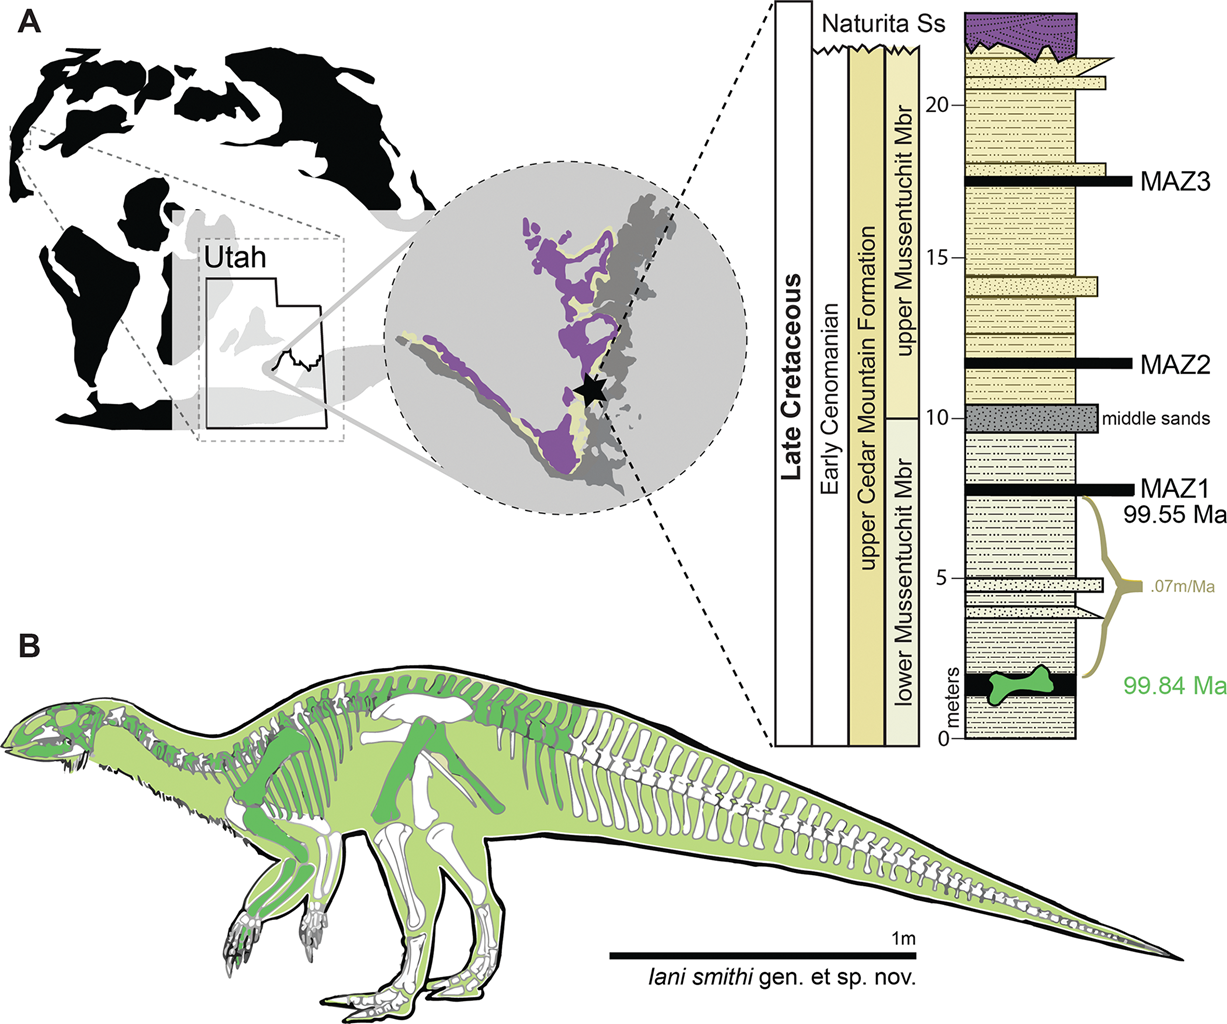 Παγκόσμιος χάρτης που δείχνει την τοποθεσία εύρεσης του δεινόσαυρου και γραφική αναπαράστασή του (με πράσινο χρώμα σημειώνεται το σκελετικό υλικό που βρέθηκε)